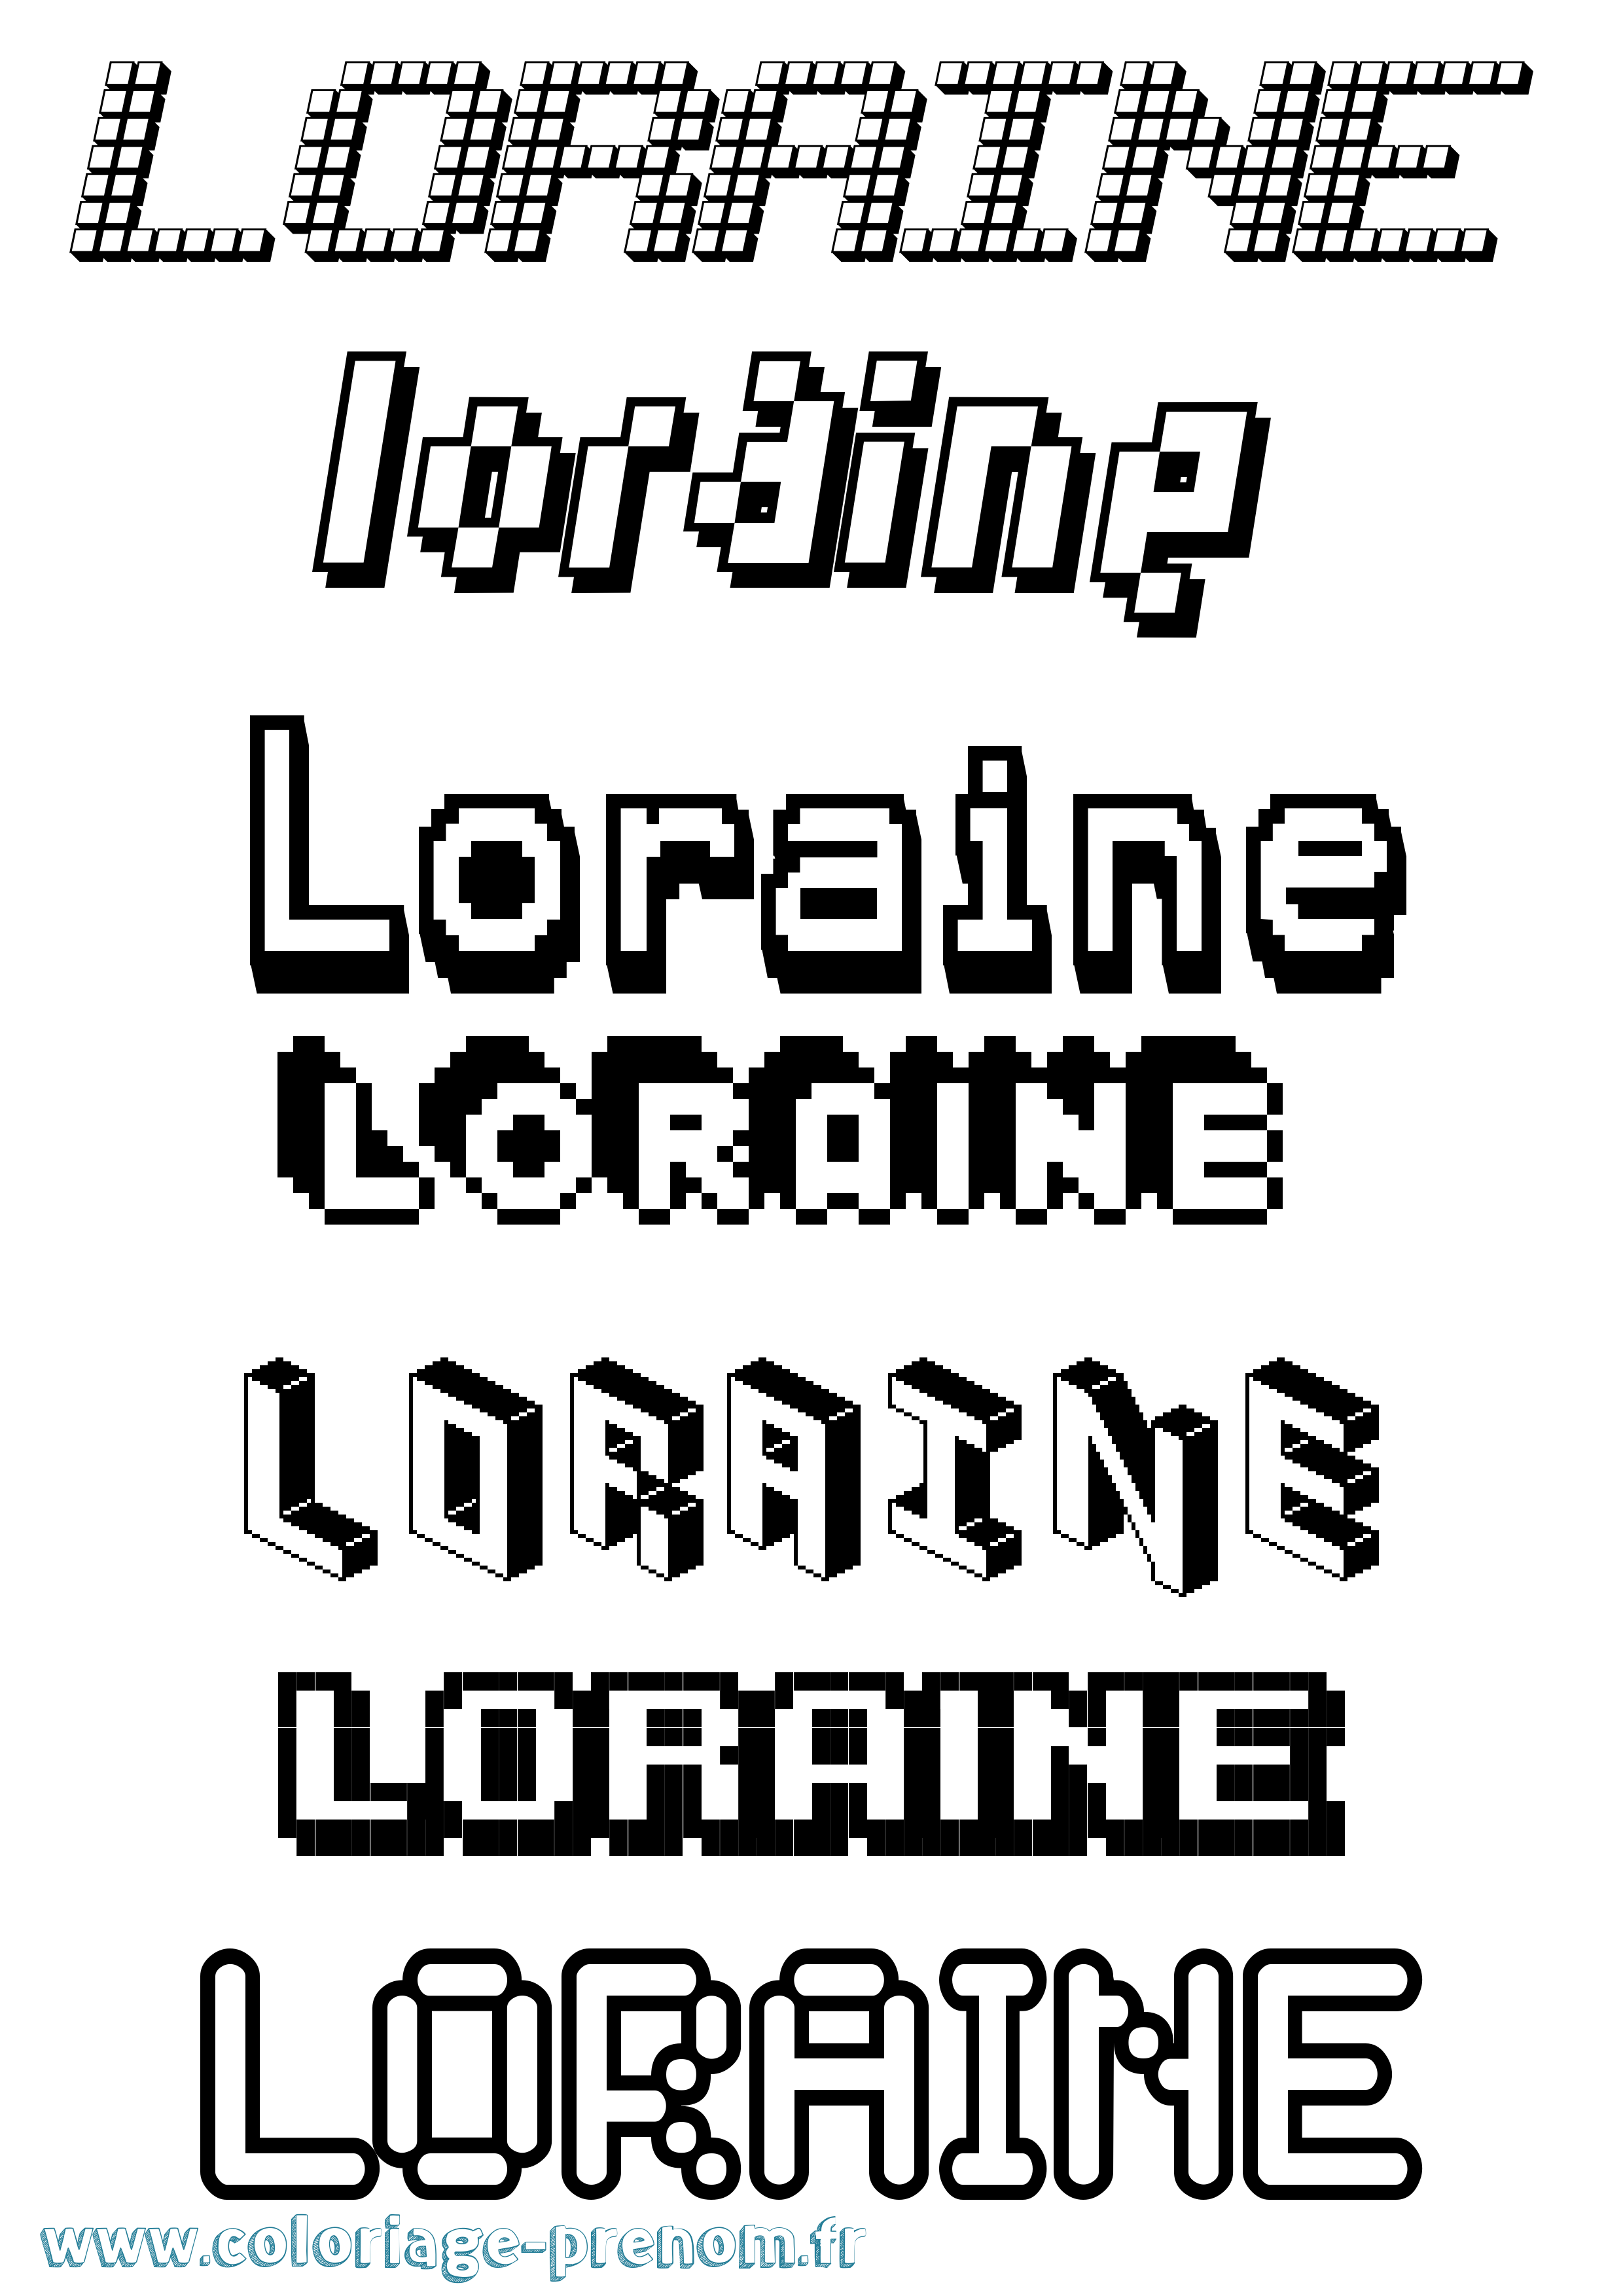 Coloriage prénom Loraine Pixel